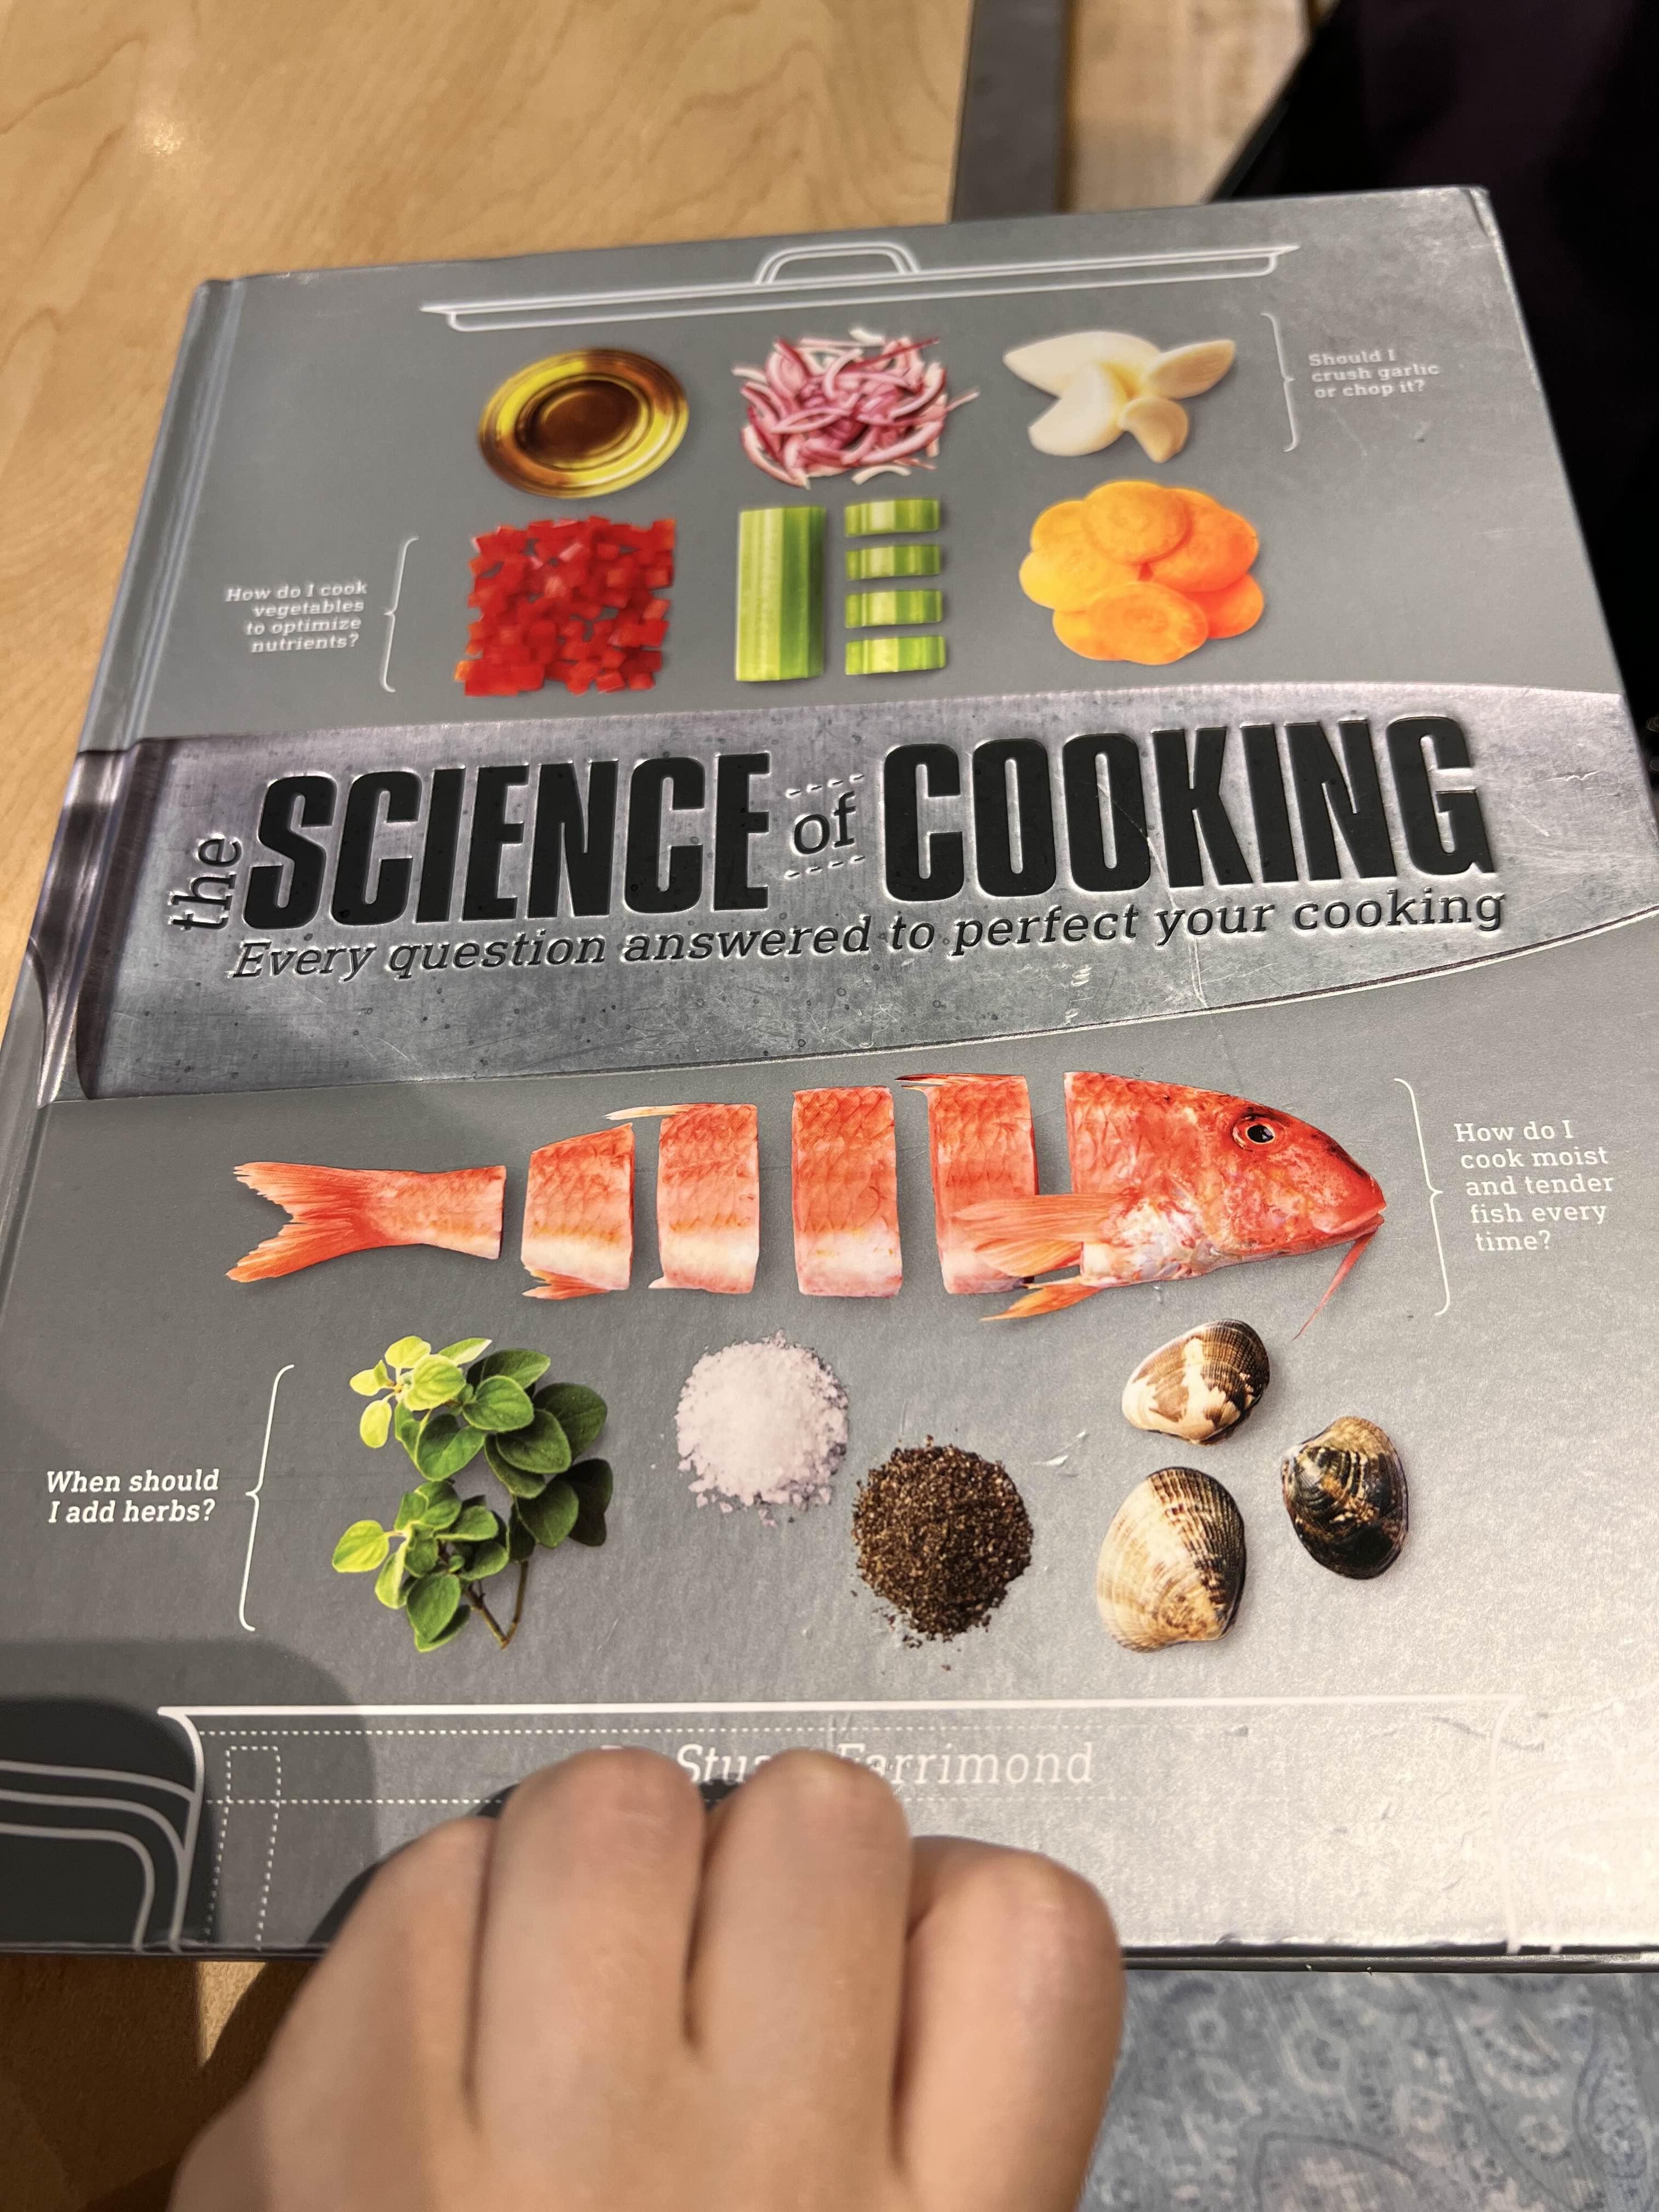 요리의 과학이라는 책